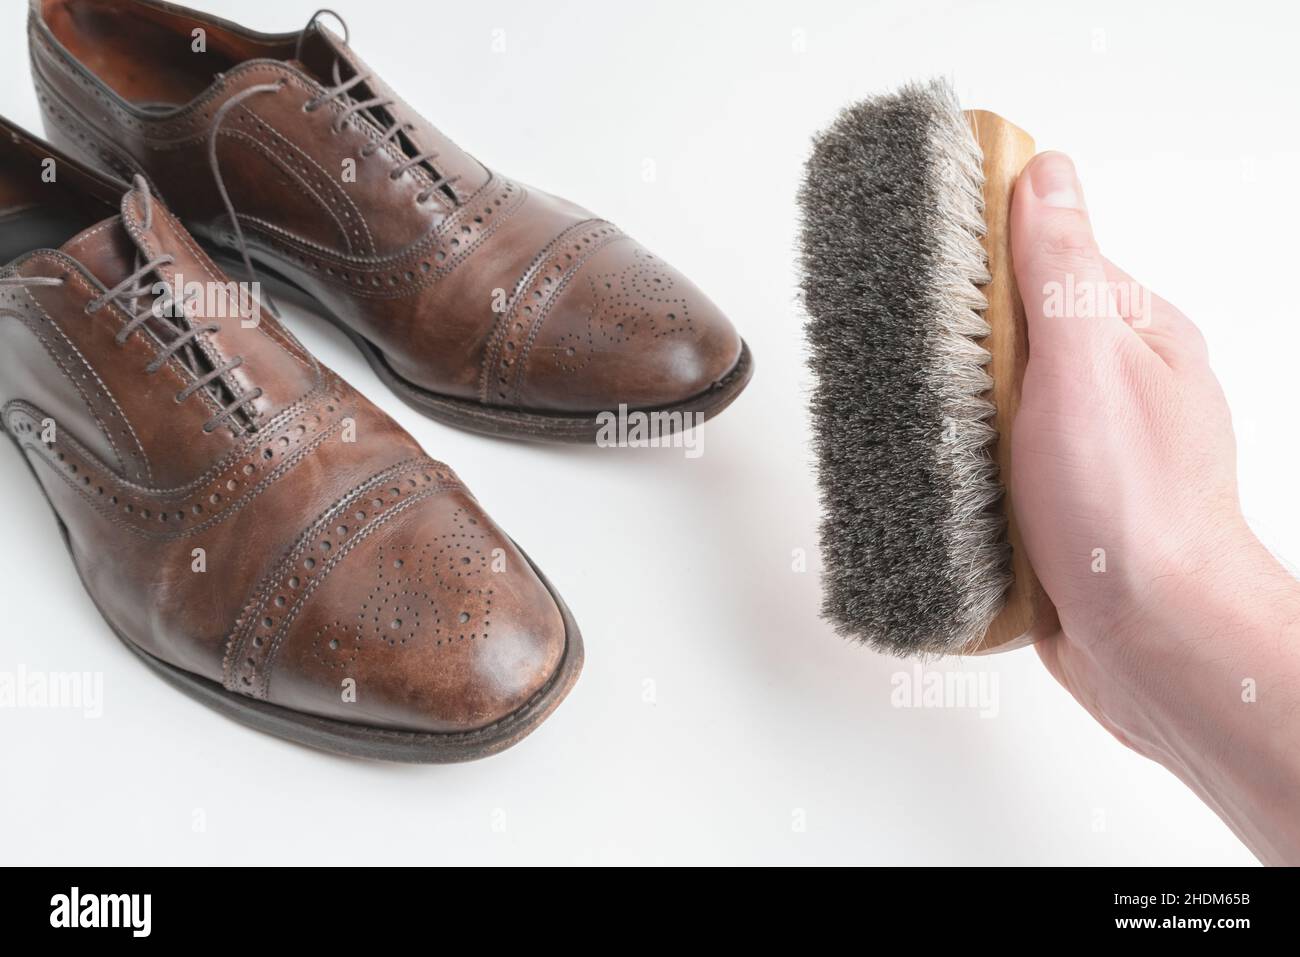 Studioaufnahme von alten, müden und kleinen zerkratzten Schnürsenkeln aus oxford-Schuhen in brünierter brauner Farbe auf weißem Hintergrund. Rechte männliche Hand, die A hält Stockfoto